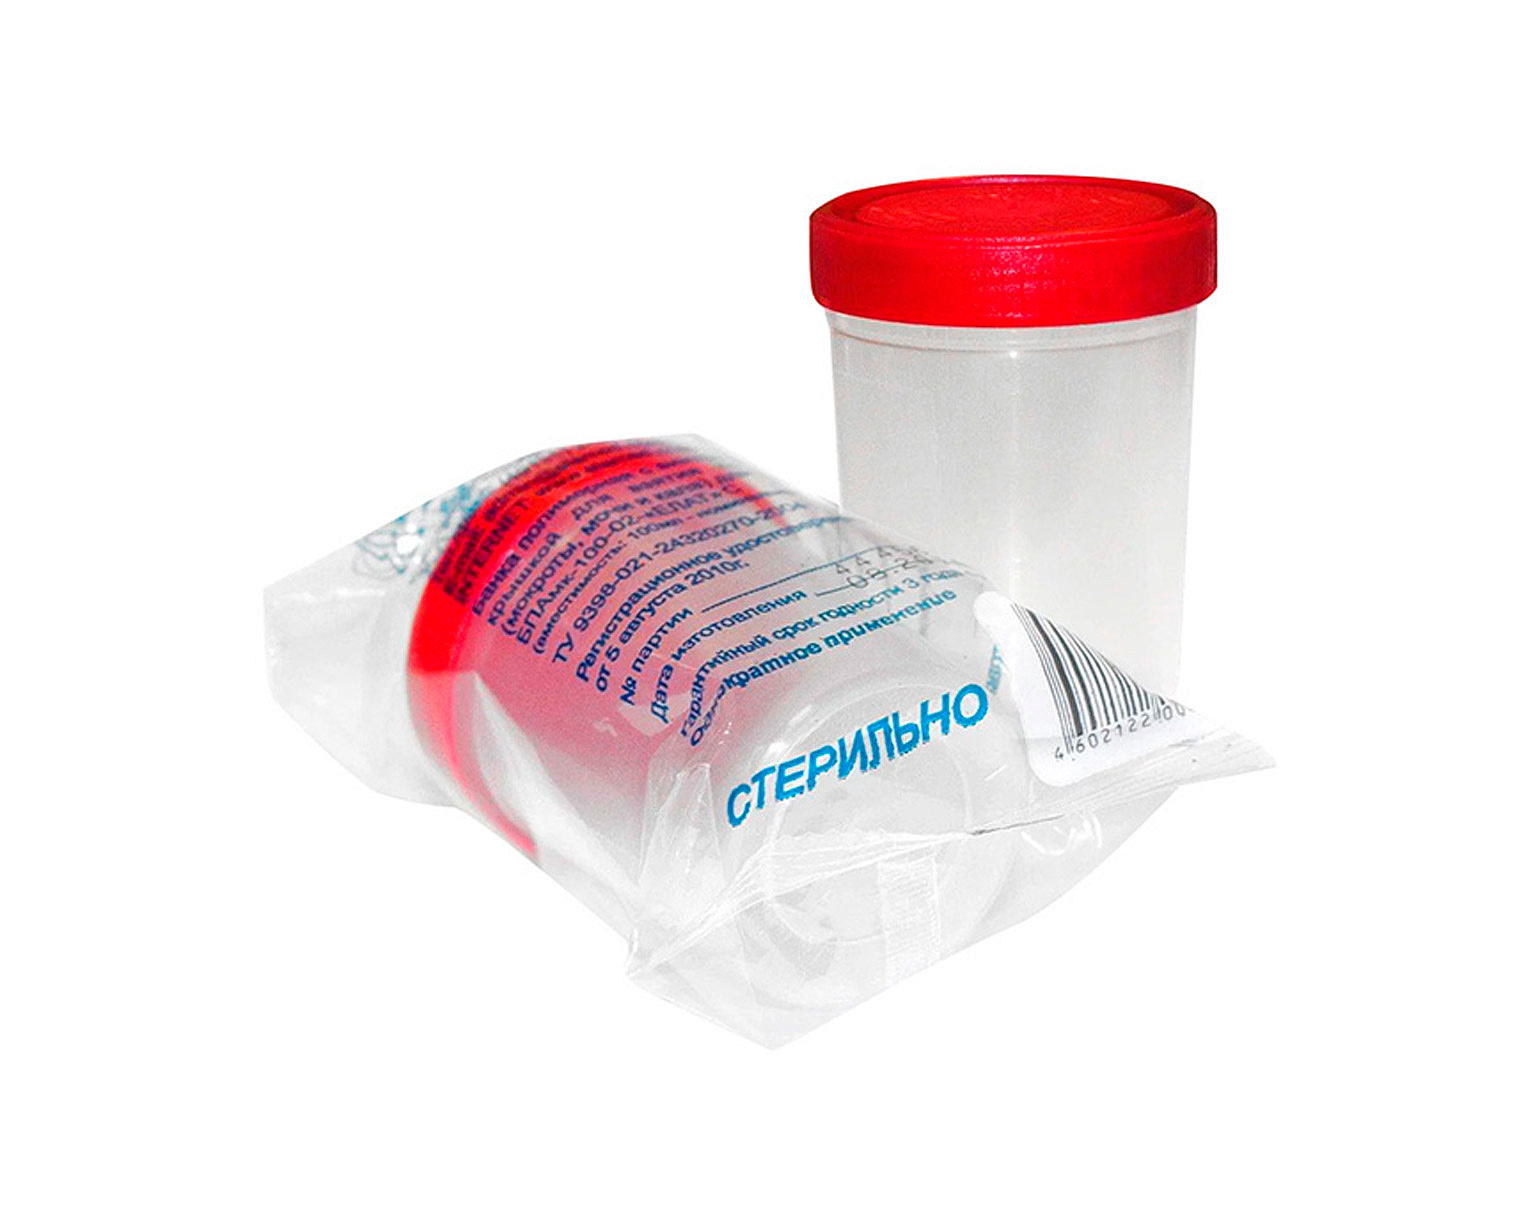 Контейнер полимерный для биопроб, одноразовый 125 мл. стерильный /PLASTI LAB/ (250 штук в упаковке)